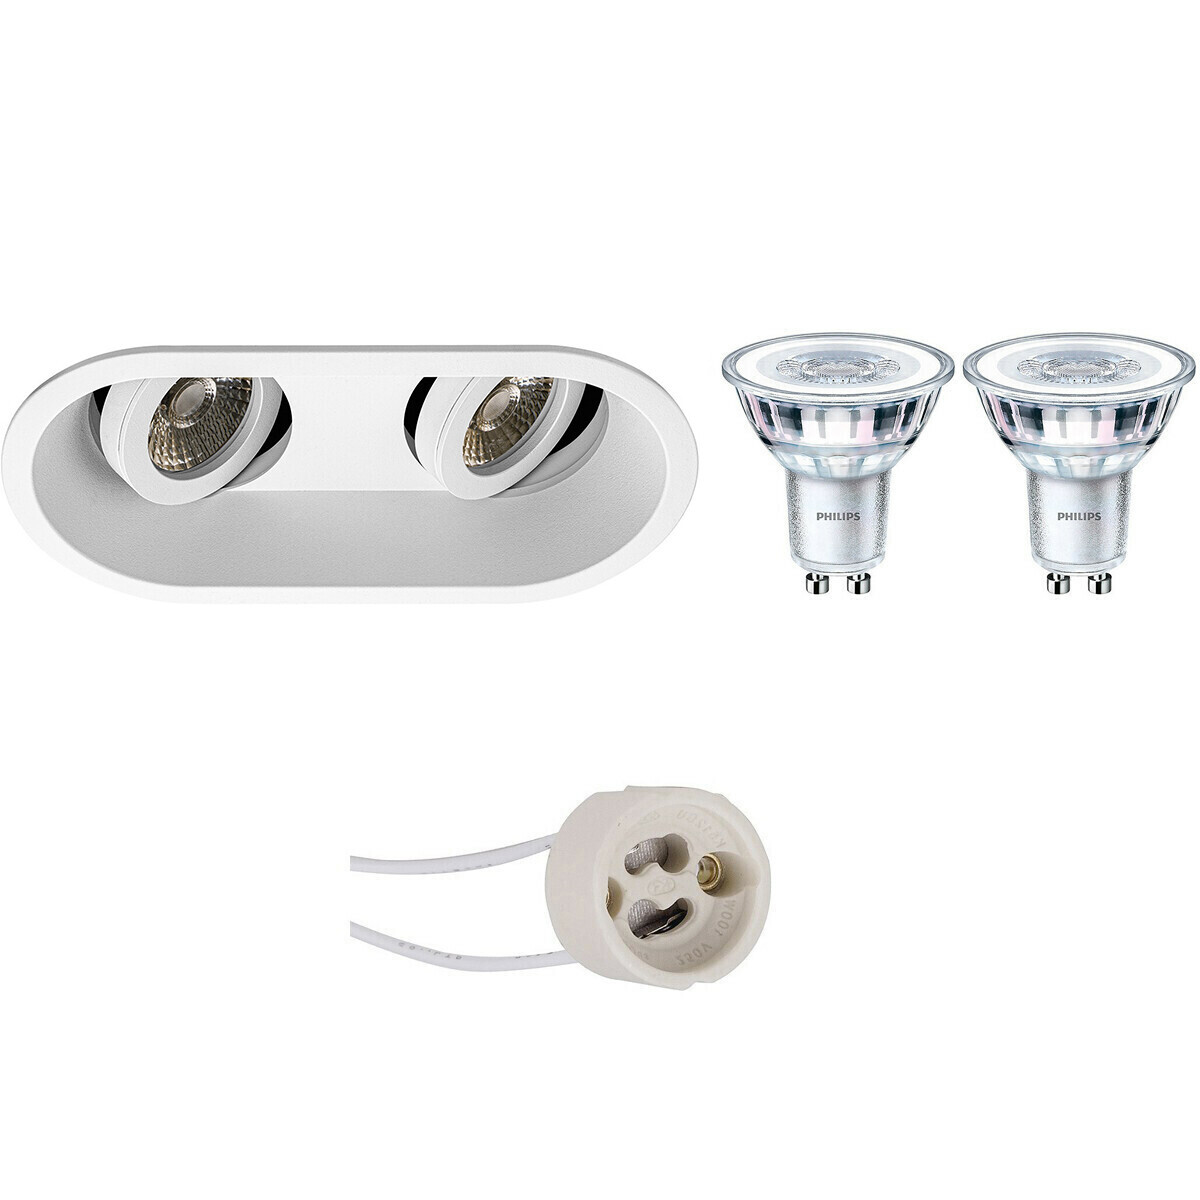 BES LED LED Spot Set - Pragmi Zano Pro - GU10 Fitting - Inbouw Ovaal Dubbel - Mat Wit - Kantelbaar - 185x93mm - Philips - CorePro 830 36D - 4.6W - Warm Wit 3000K